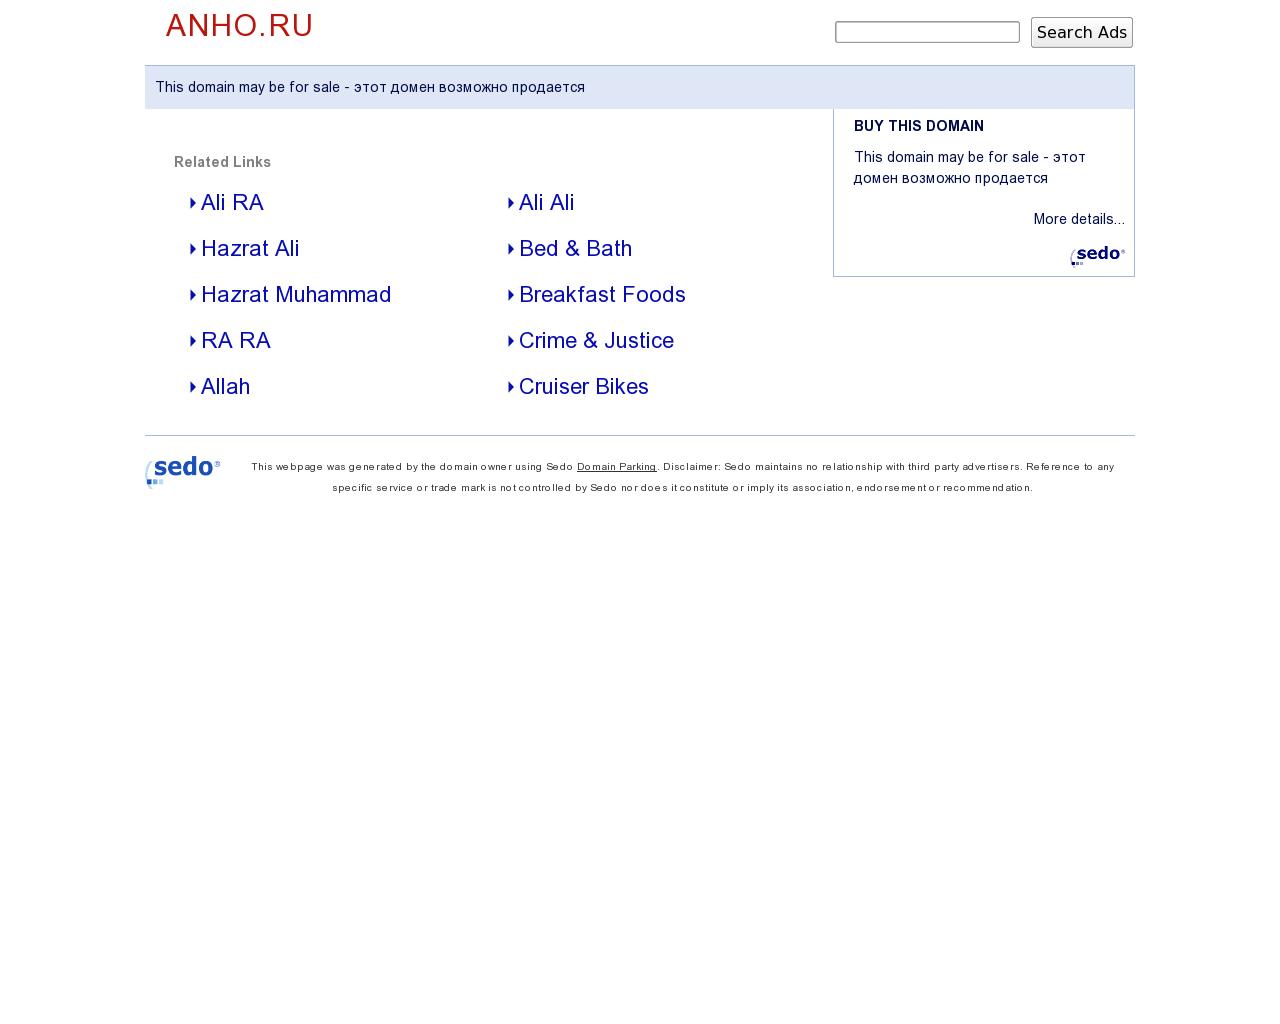 Изображение сайта anho.ru в разрешении 1280x1024